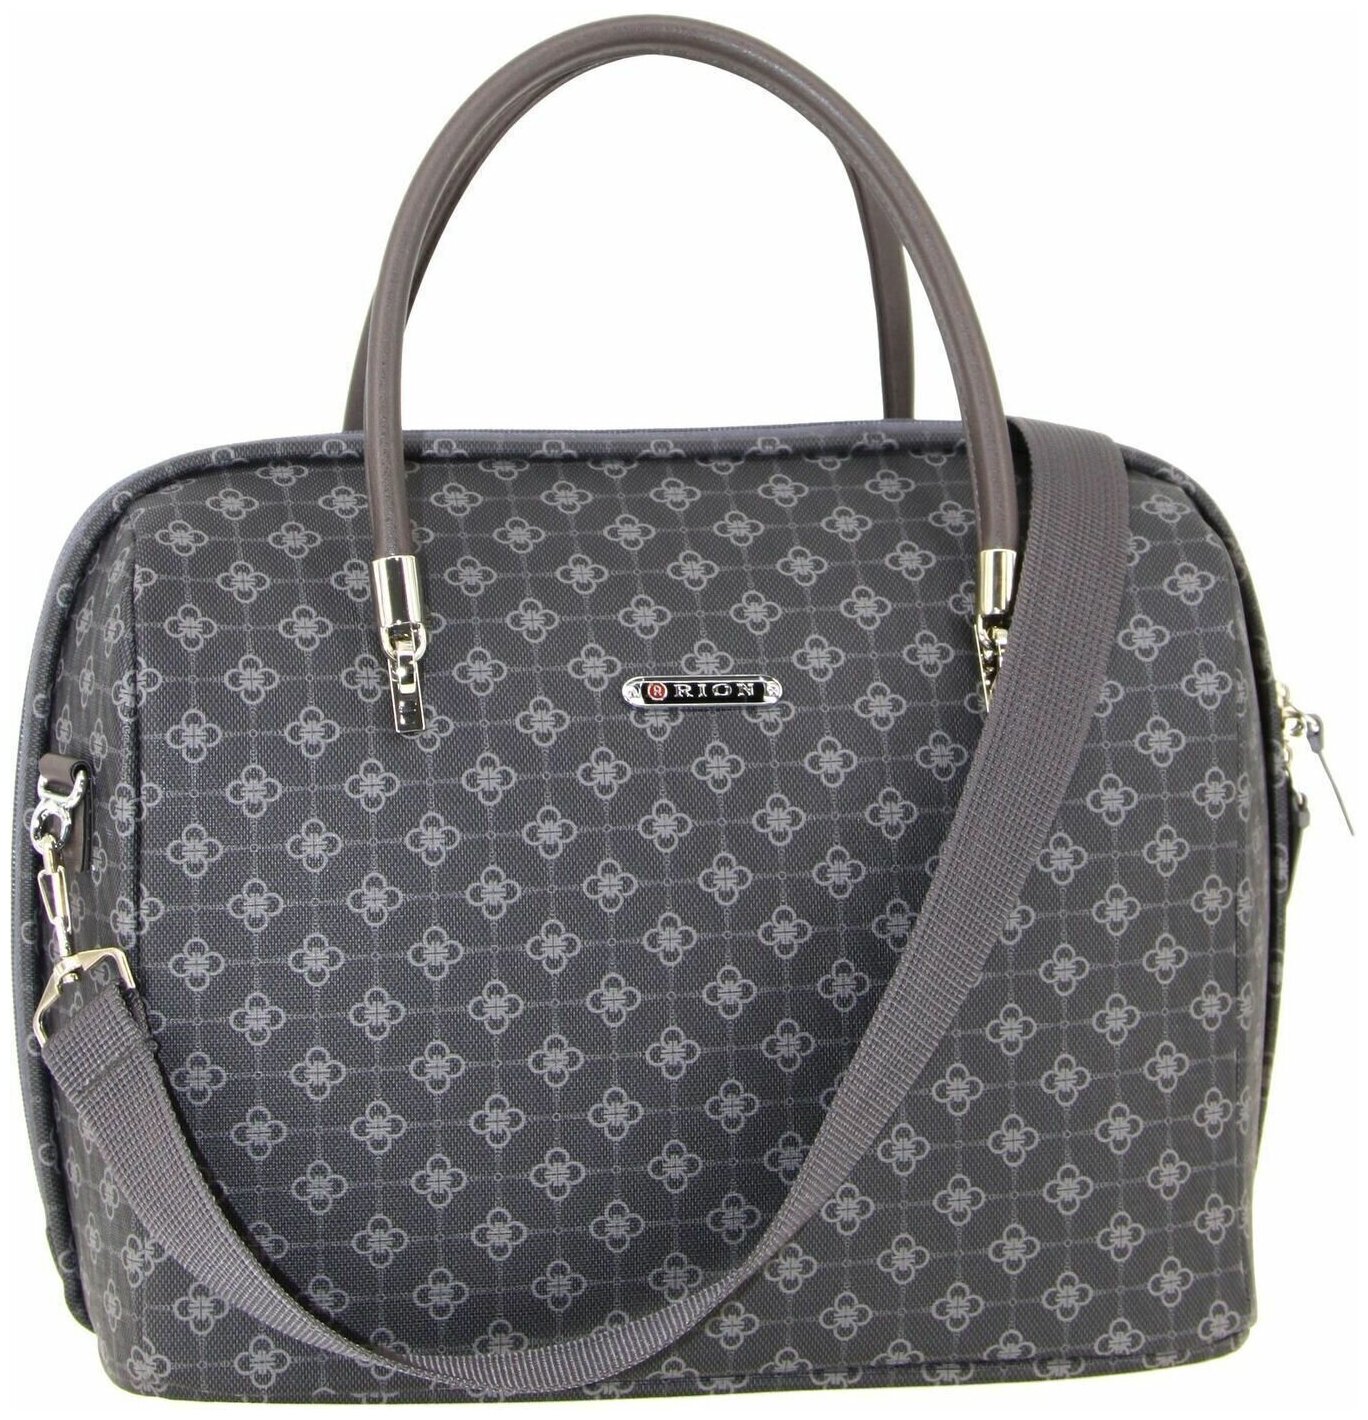 Дорожная сумка с ремнем на ручку чемодана Рион+ (RION+) / ручная кладь для самолета / саквояж, R240, экокожа, 20 литров, серый-цветы